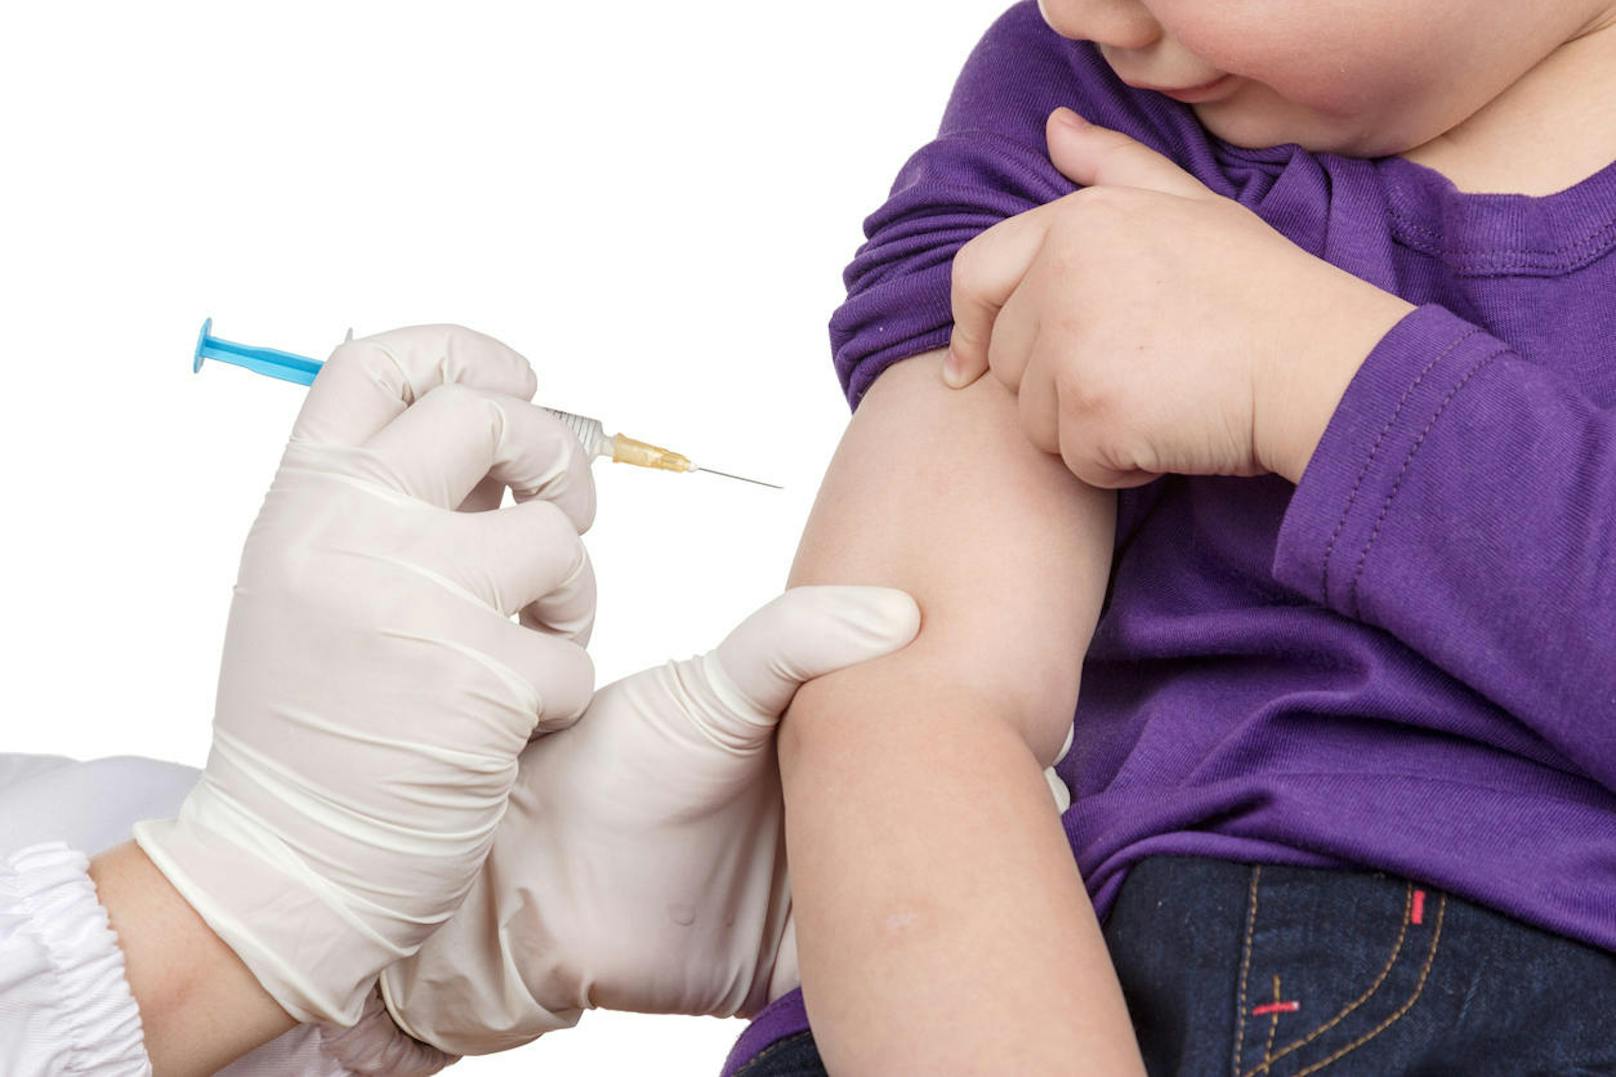 Zu Impfungen gegen Keuchhusten wird dringend geraten. Für Säuglinge wird sie im Rahmen der Sechsfach-Impfung im dritten, fünften und zwölften bis vierzehnten Lebensmonat empfohlen und ist gratis.